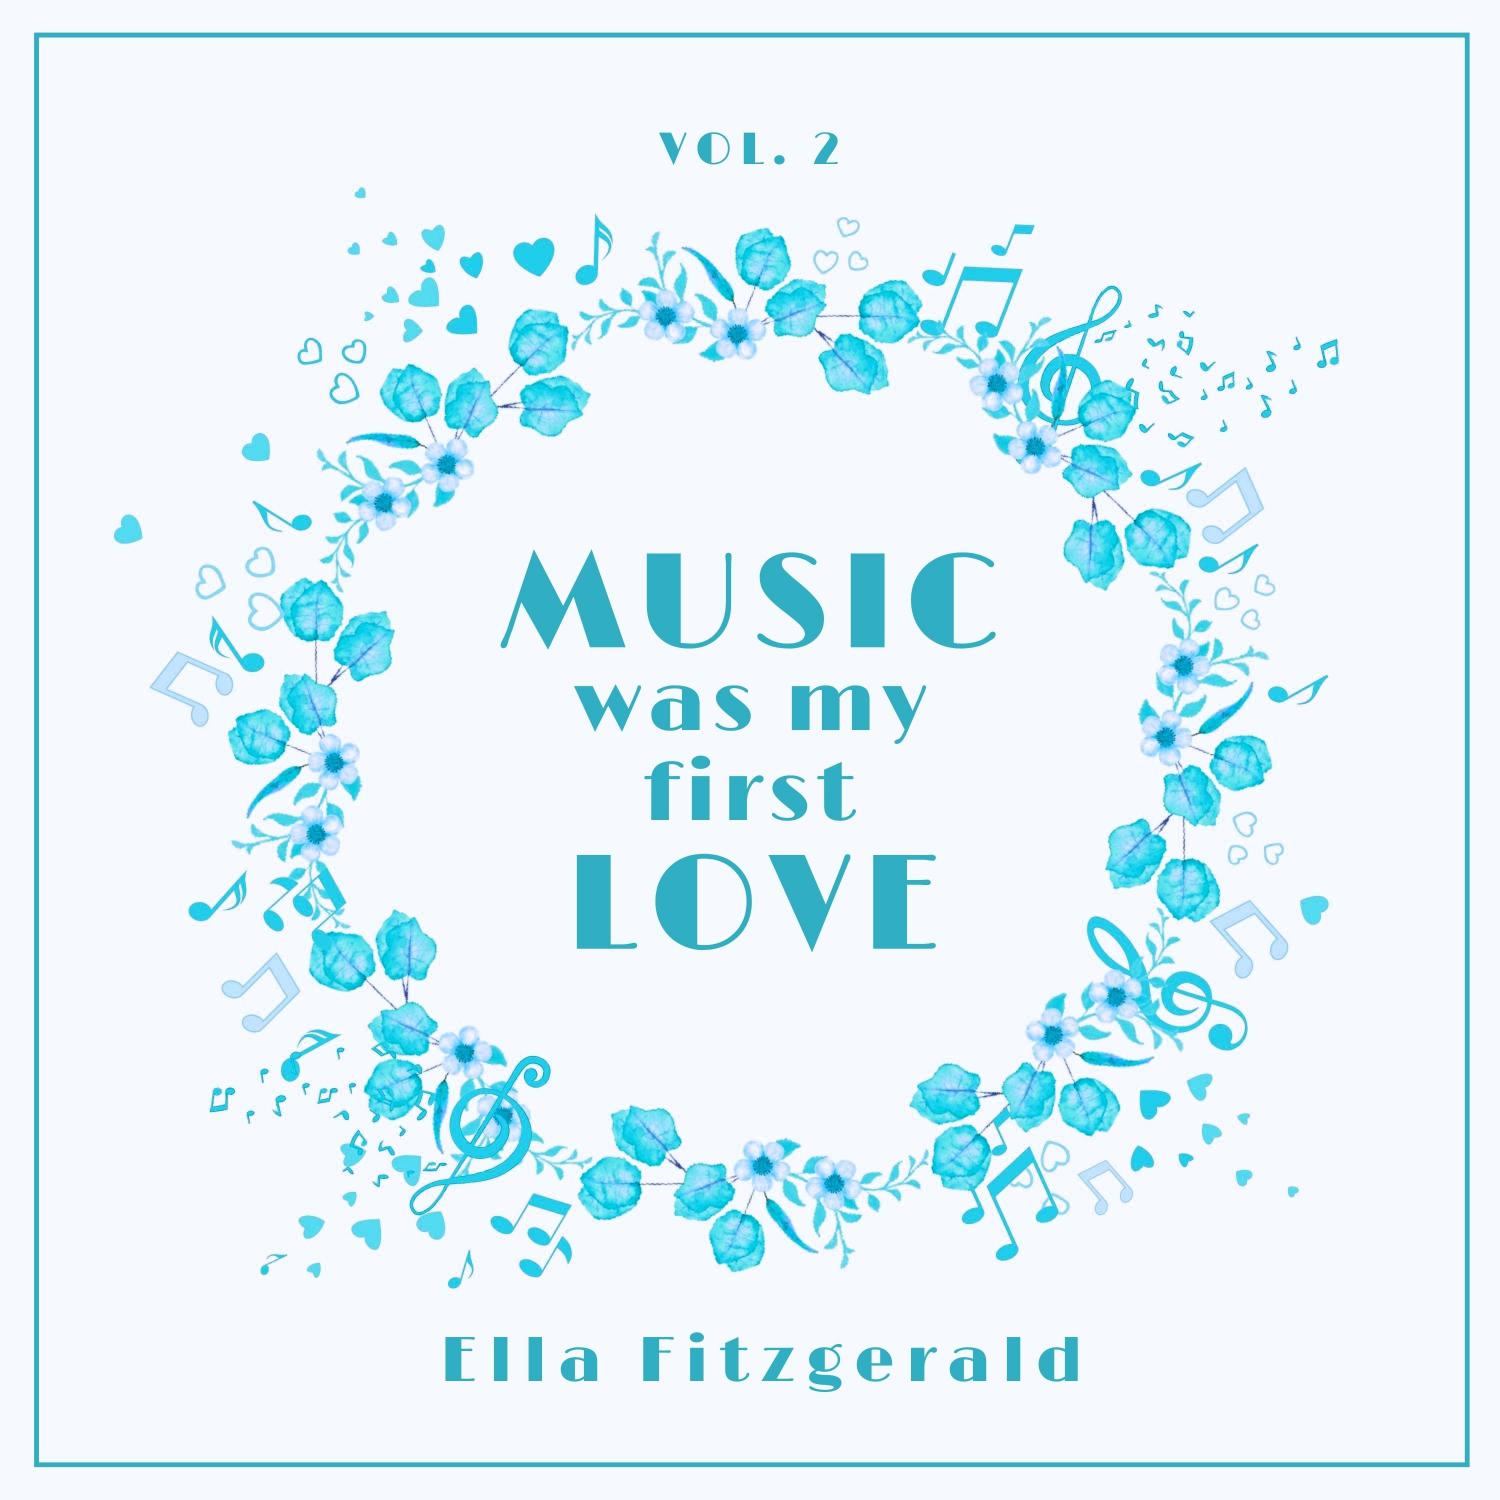 Ella Fitzgerald - Just Squeeze Me (But Don't Tease Me) (Original Mix)